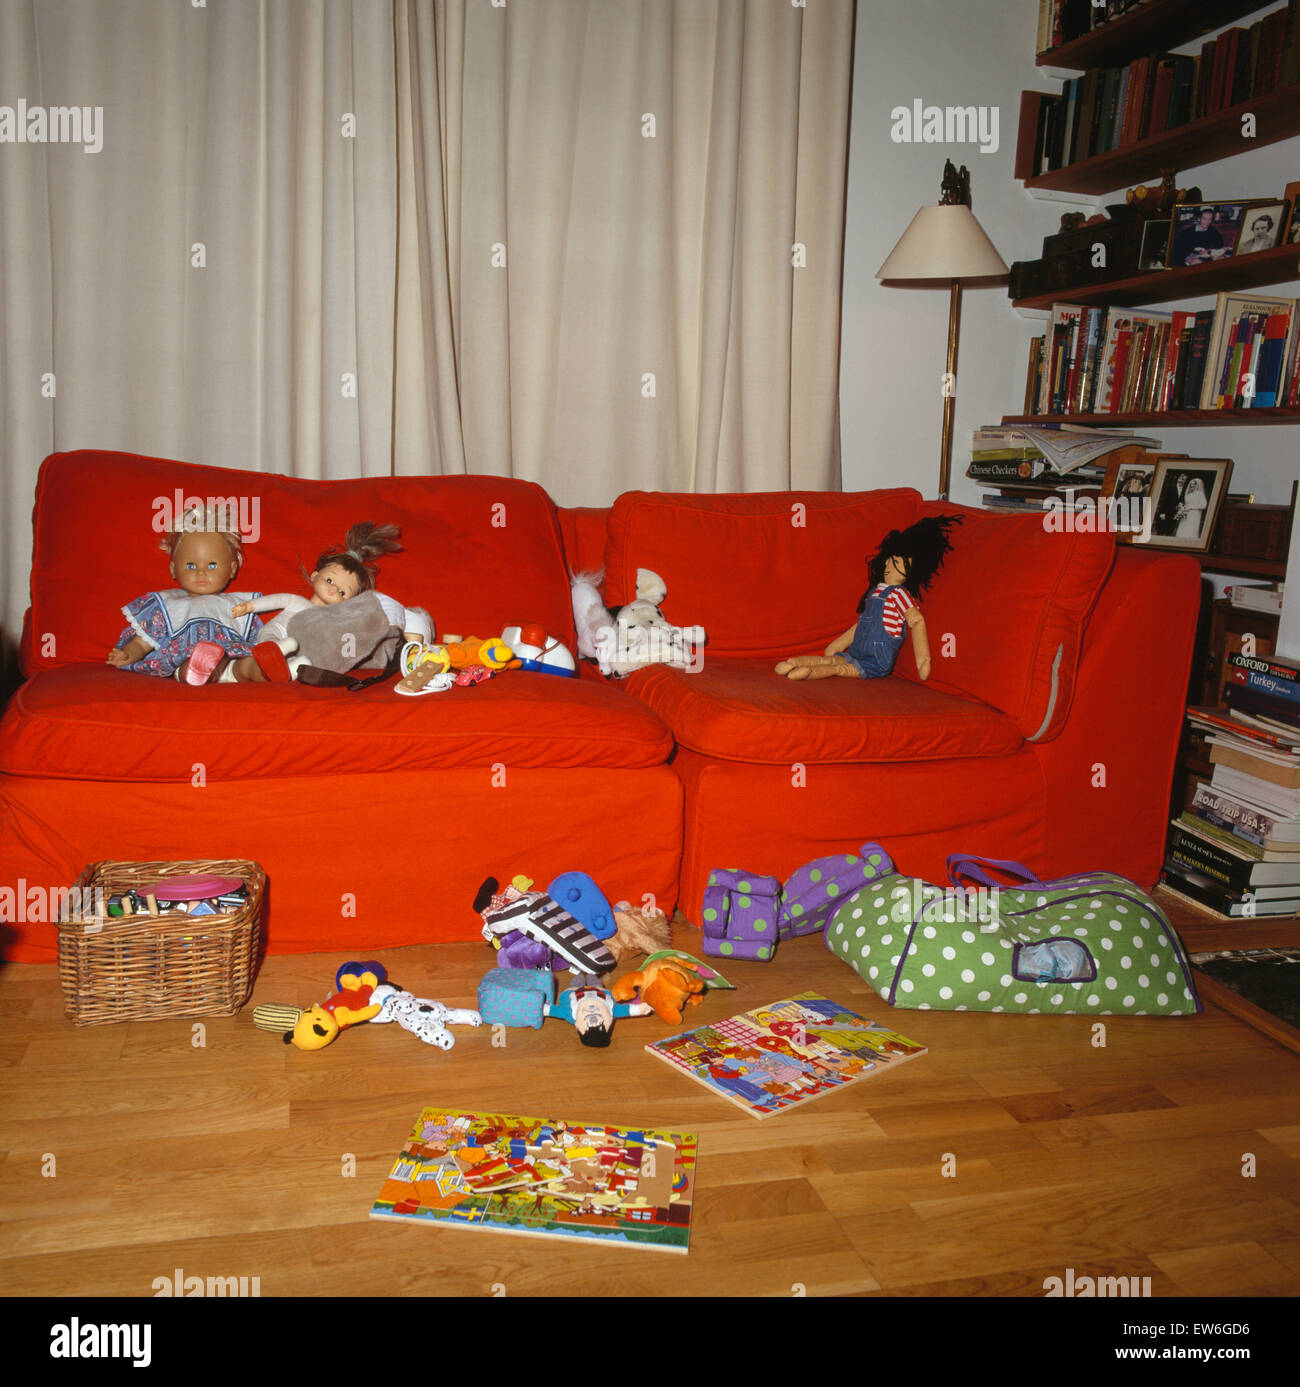 Juguetes en sofá naranja y piso en children's play room desordenados. Foto de stock